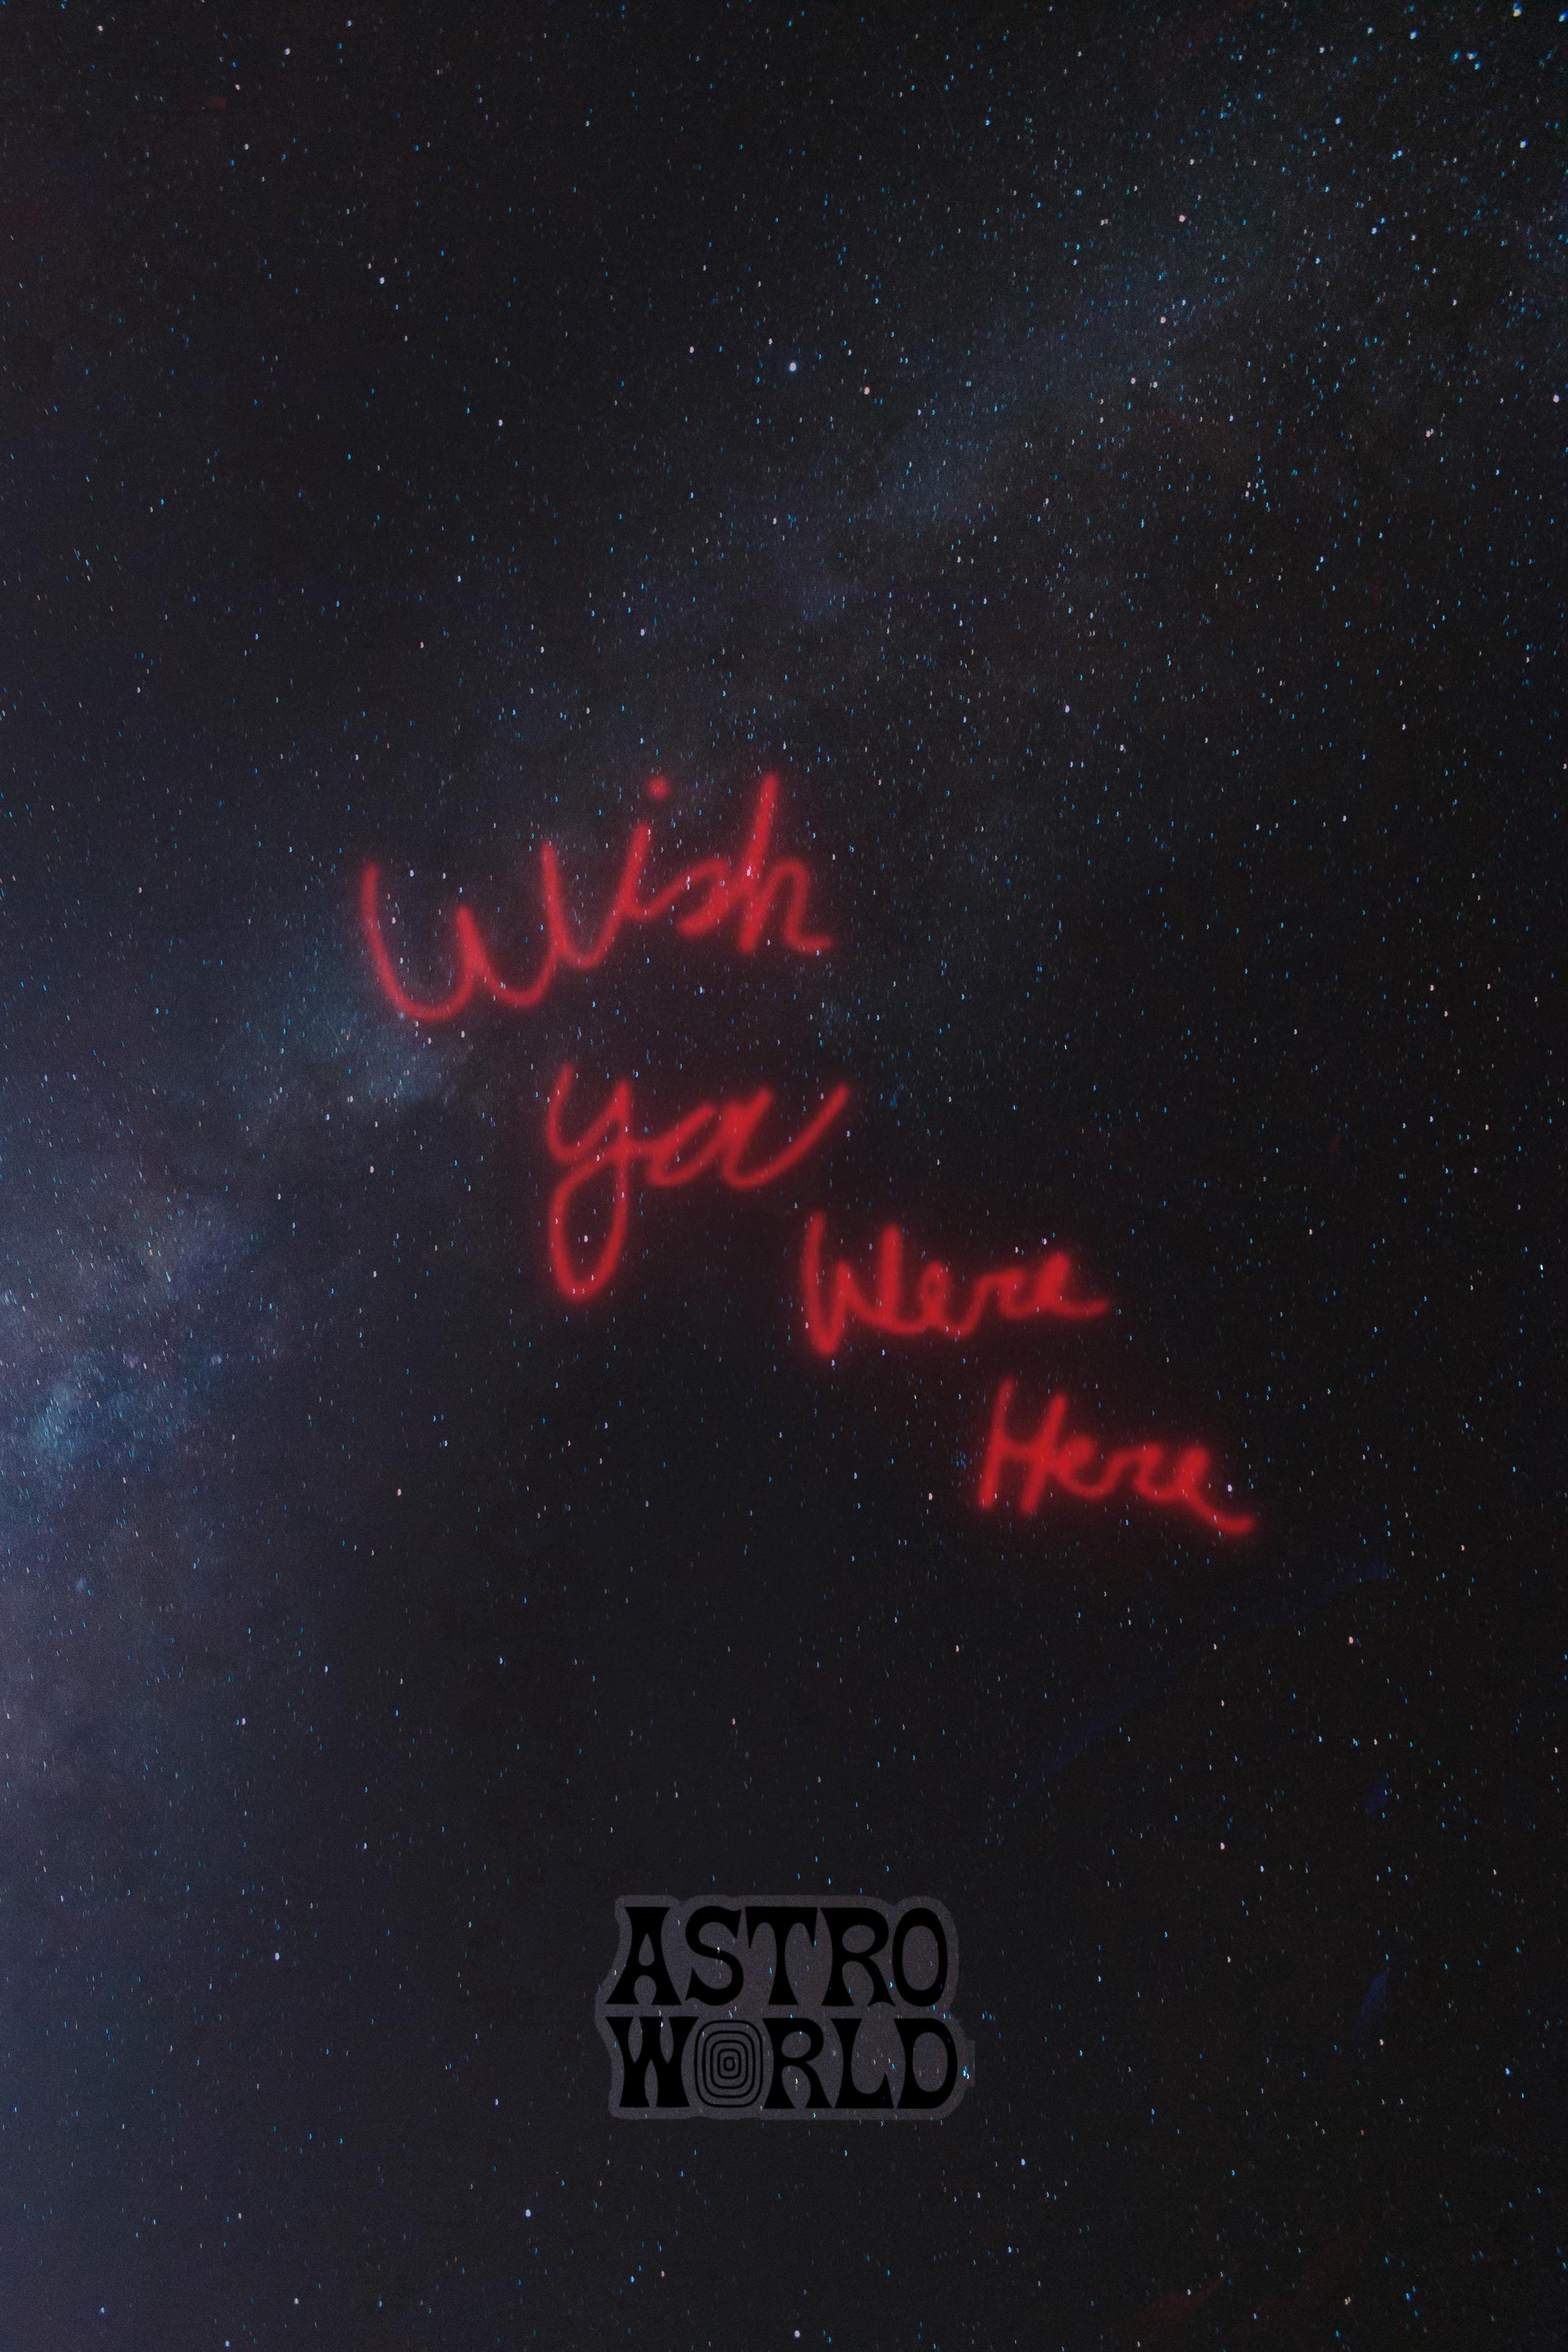 I made an AstroWorld wallpaper, enjoy :)